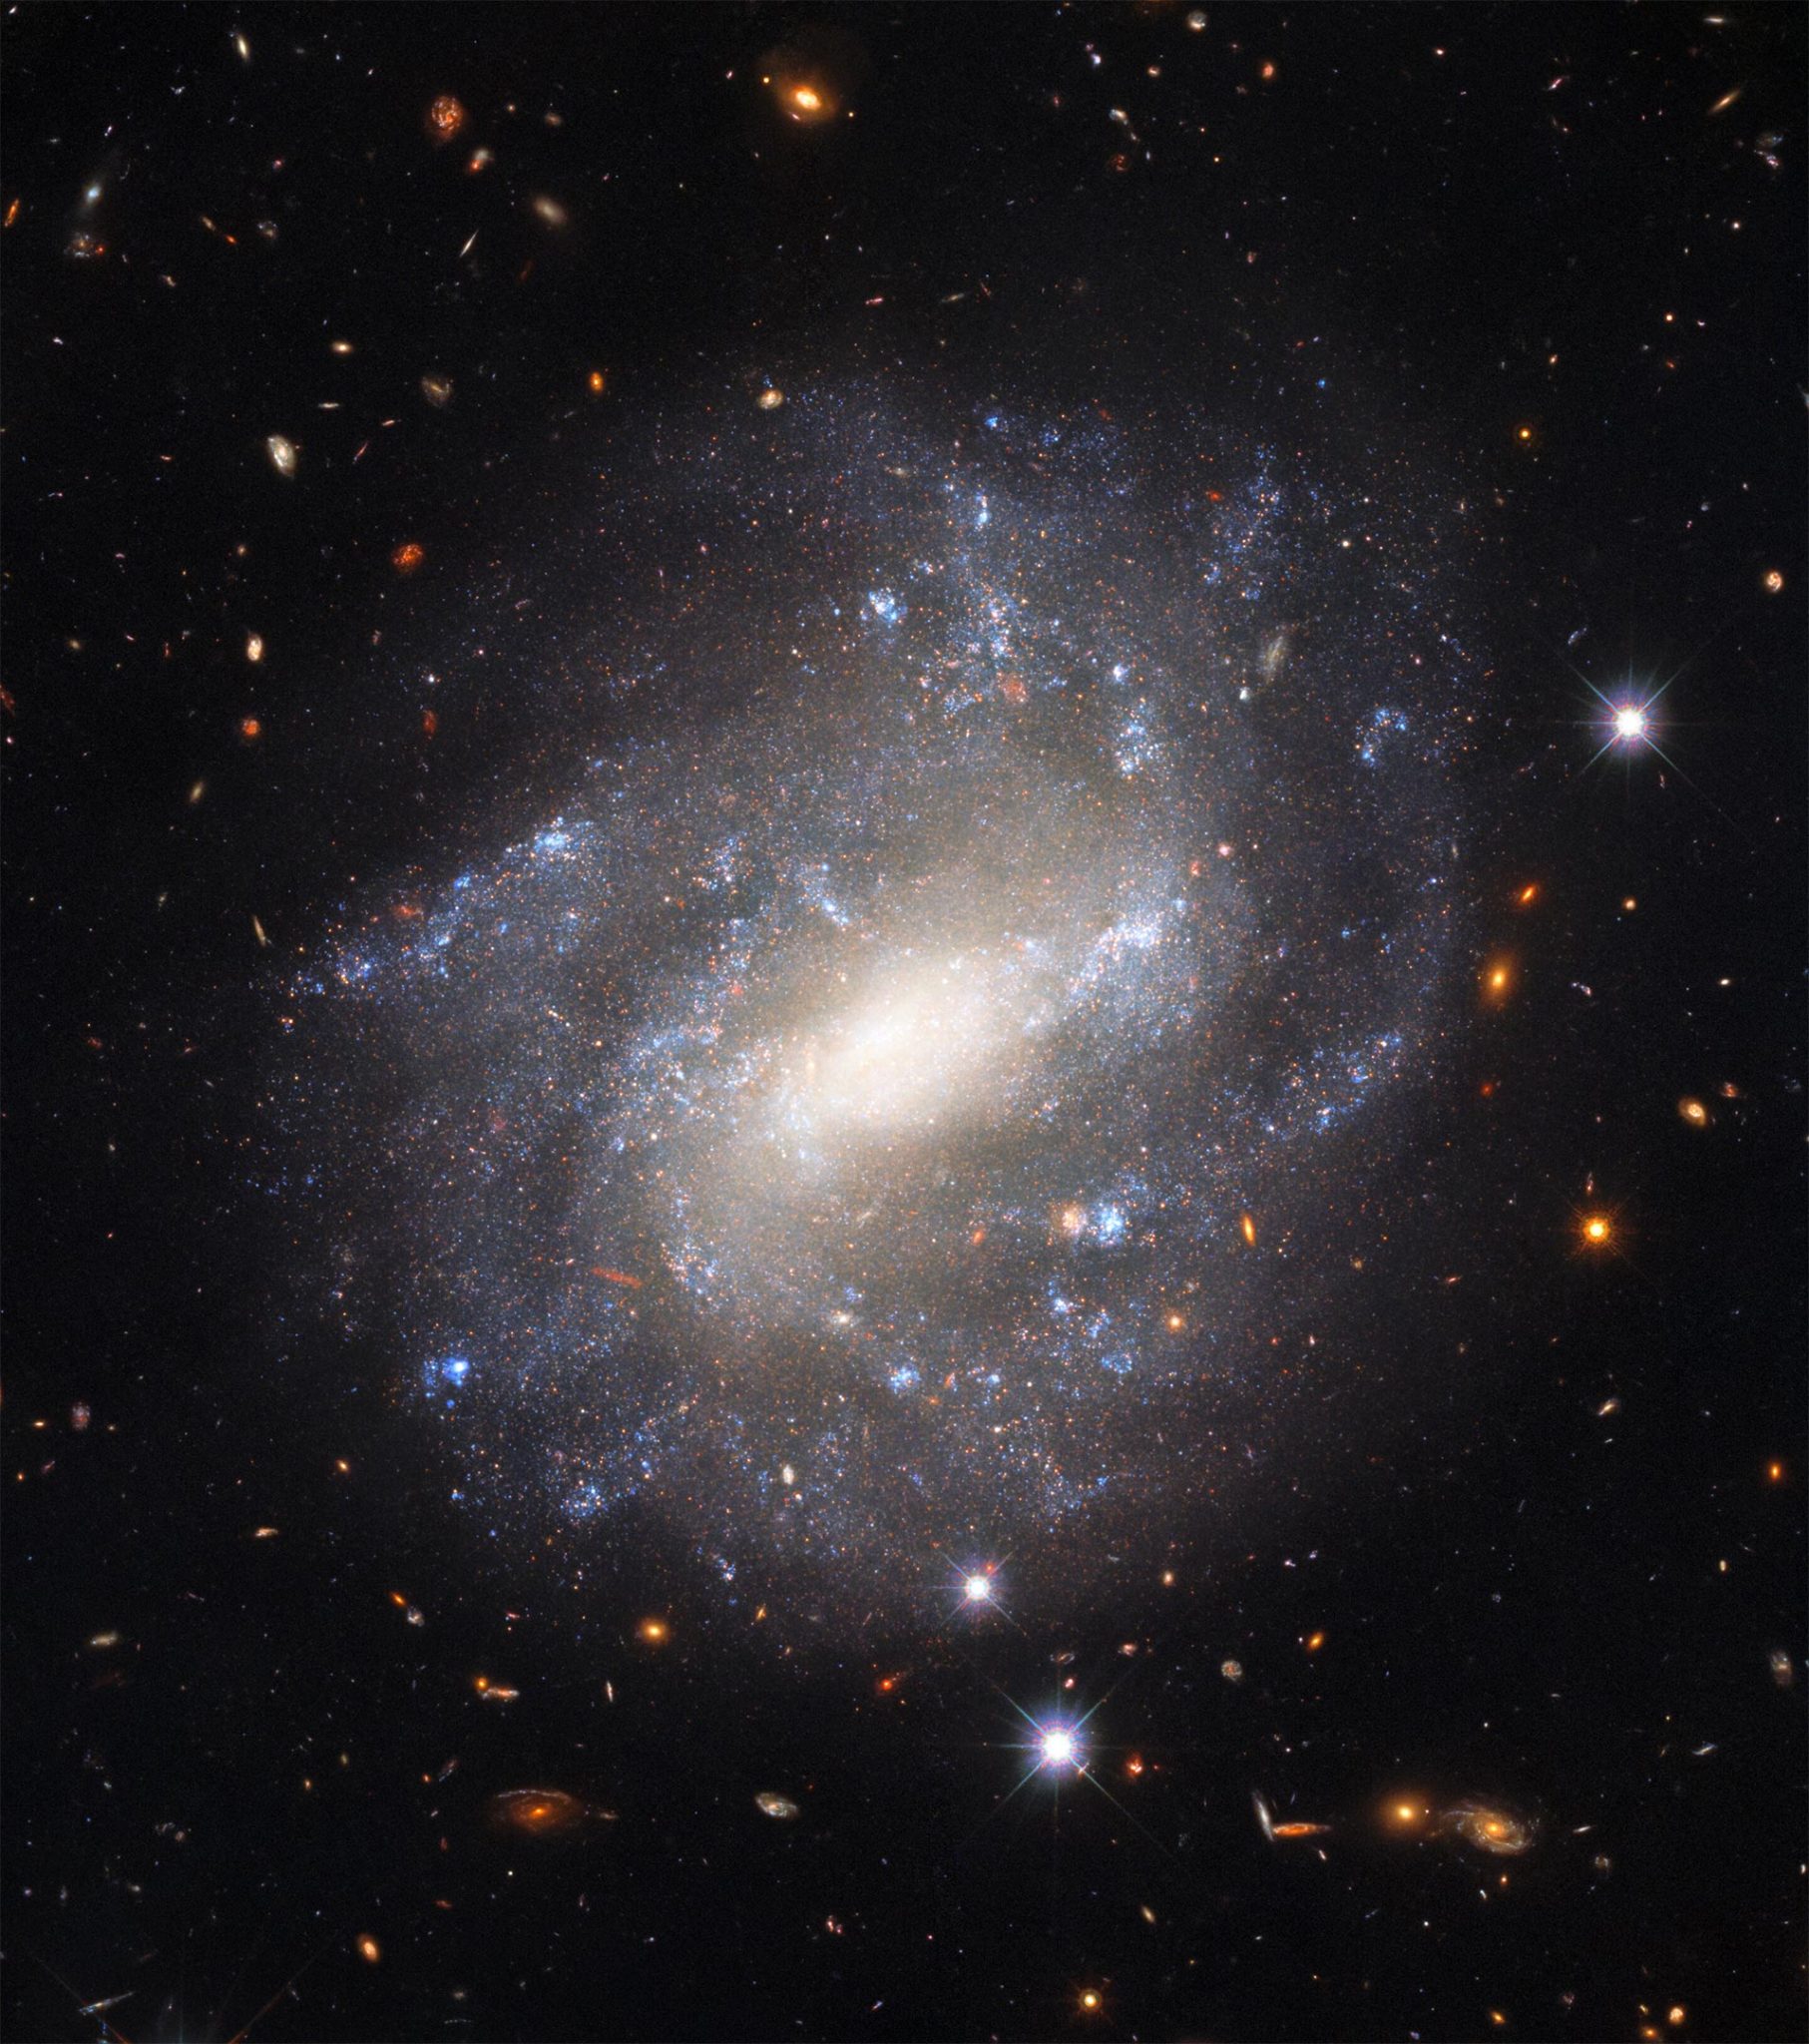 哈勃太空望远镜拍摄的孤独螺旋星系UGC 9391